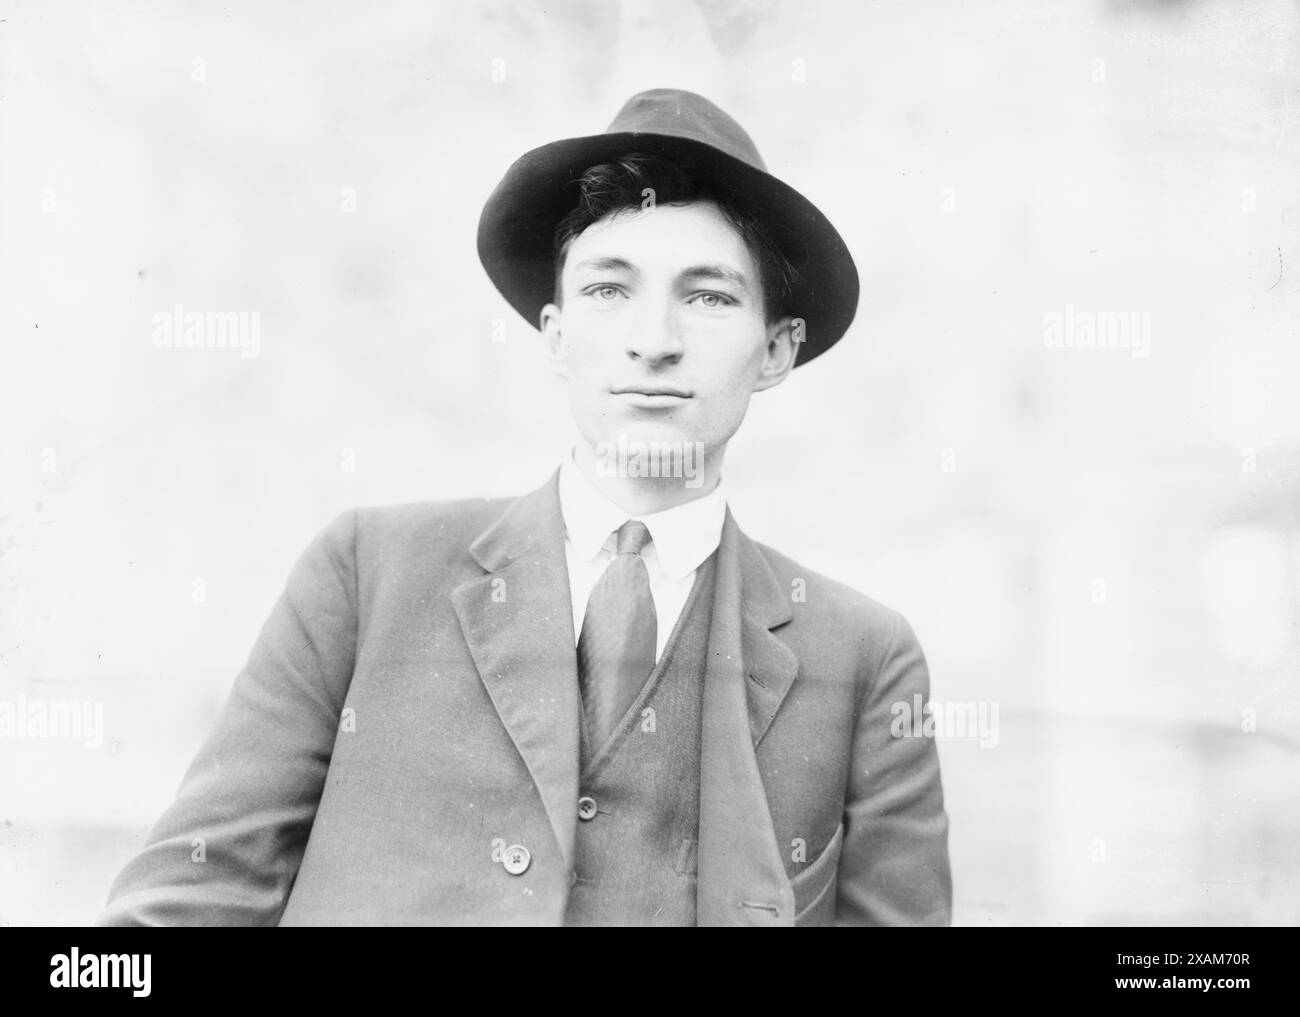 Plunkett (I.W.W.), zwischen 1910 und 1915. Zeigt Plunkett, ein Mitglied der Industrial Workers of the World, der am Bombenanschlag auf die Lexington Avenue am 4. Juli 1914 in New York City beteiligt war. Stockfoto